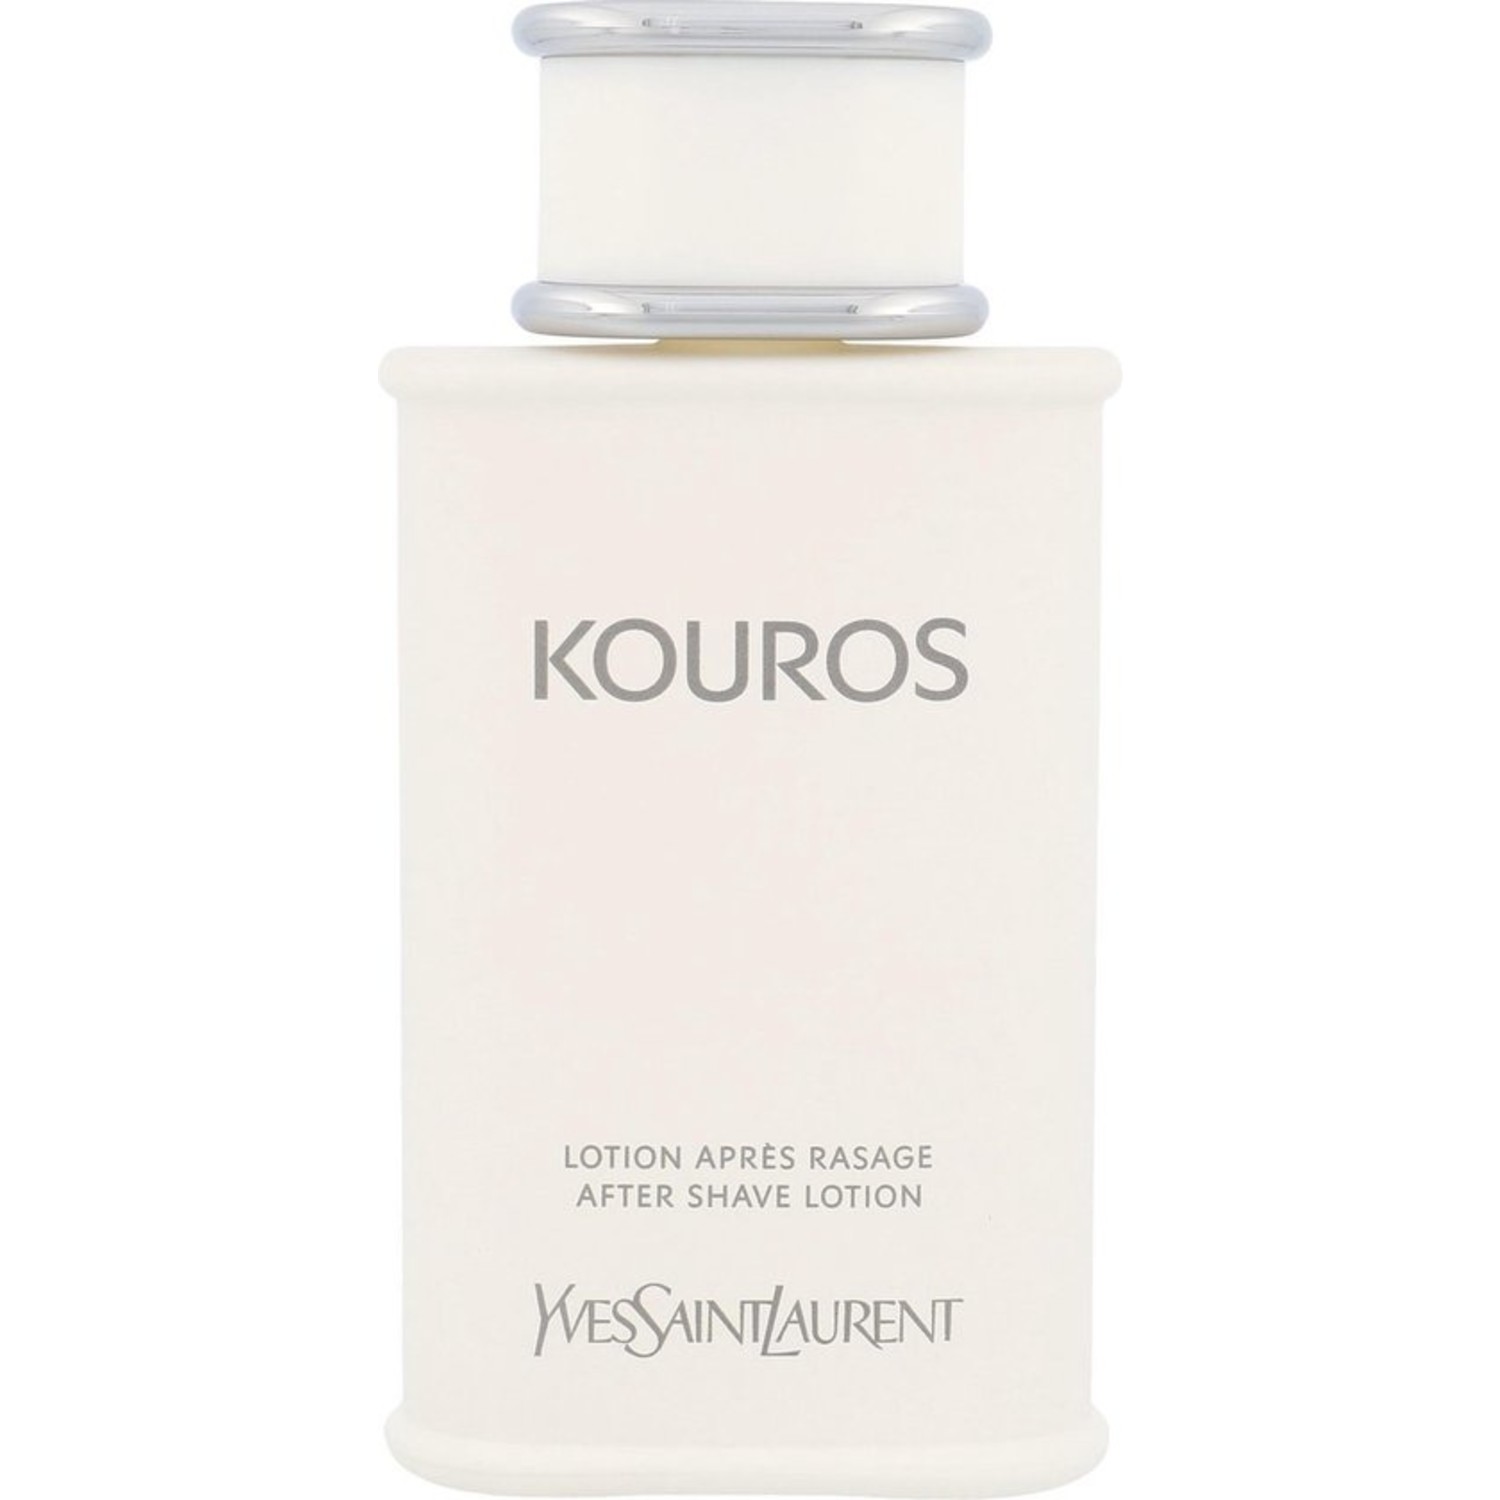 Voorschrijven Fondsen onvergeeflijk Yves Saint Laurent Kouros Aftershave Lotion online kopen | MOOI Parfumerie  - MOOI Parfumerie Vlissingen